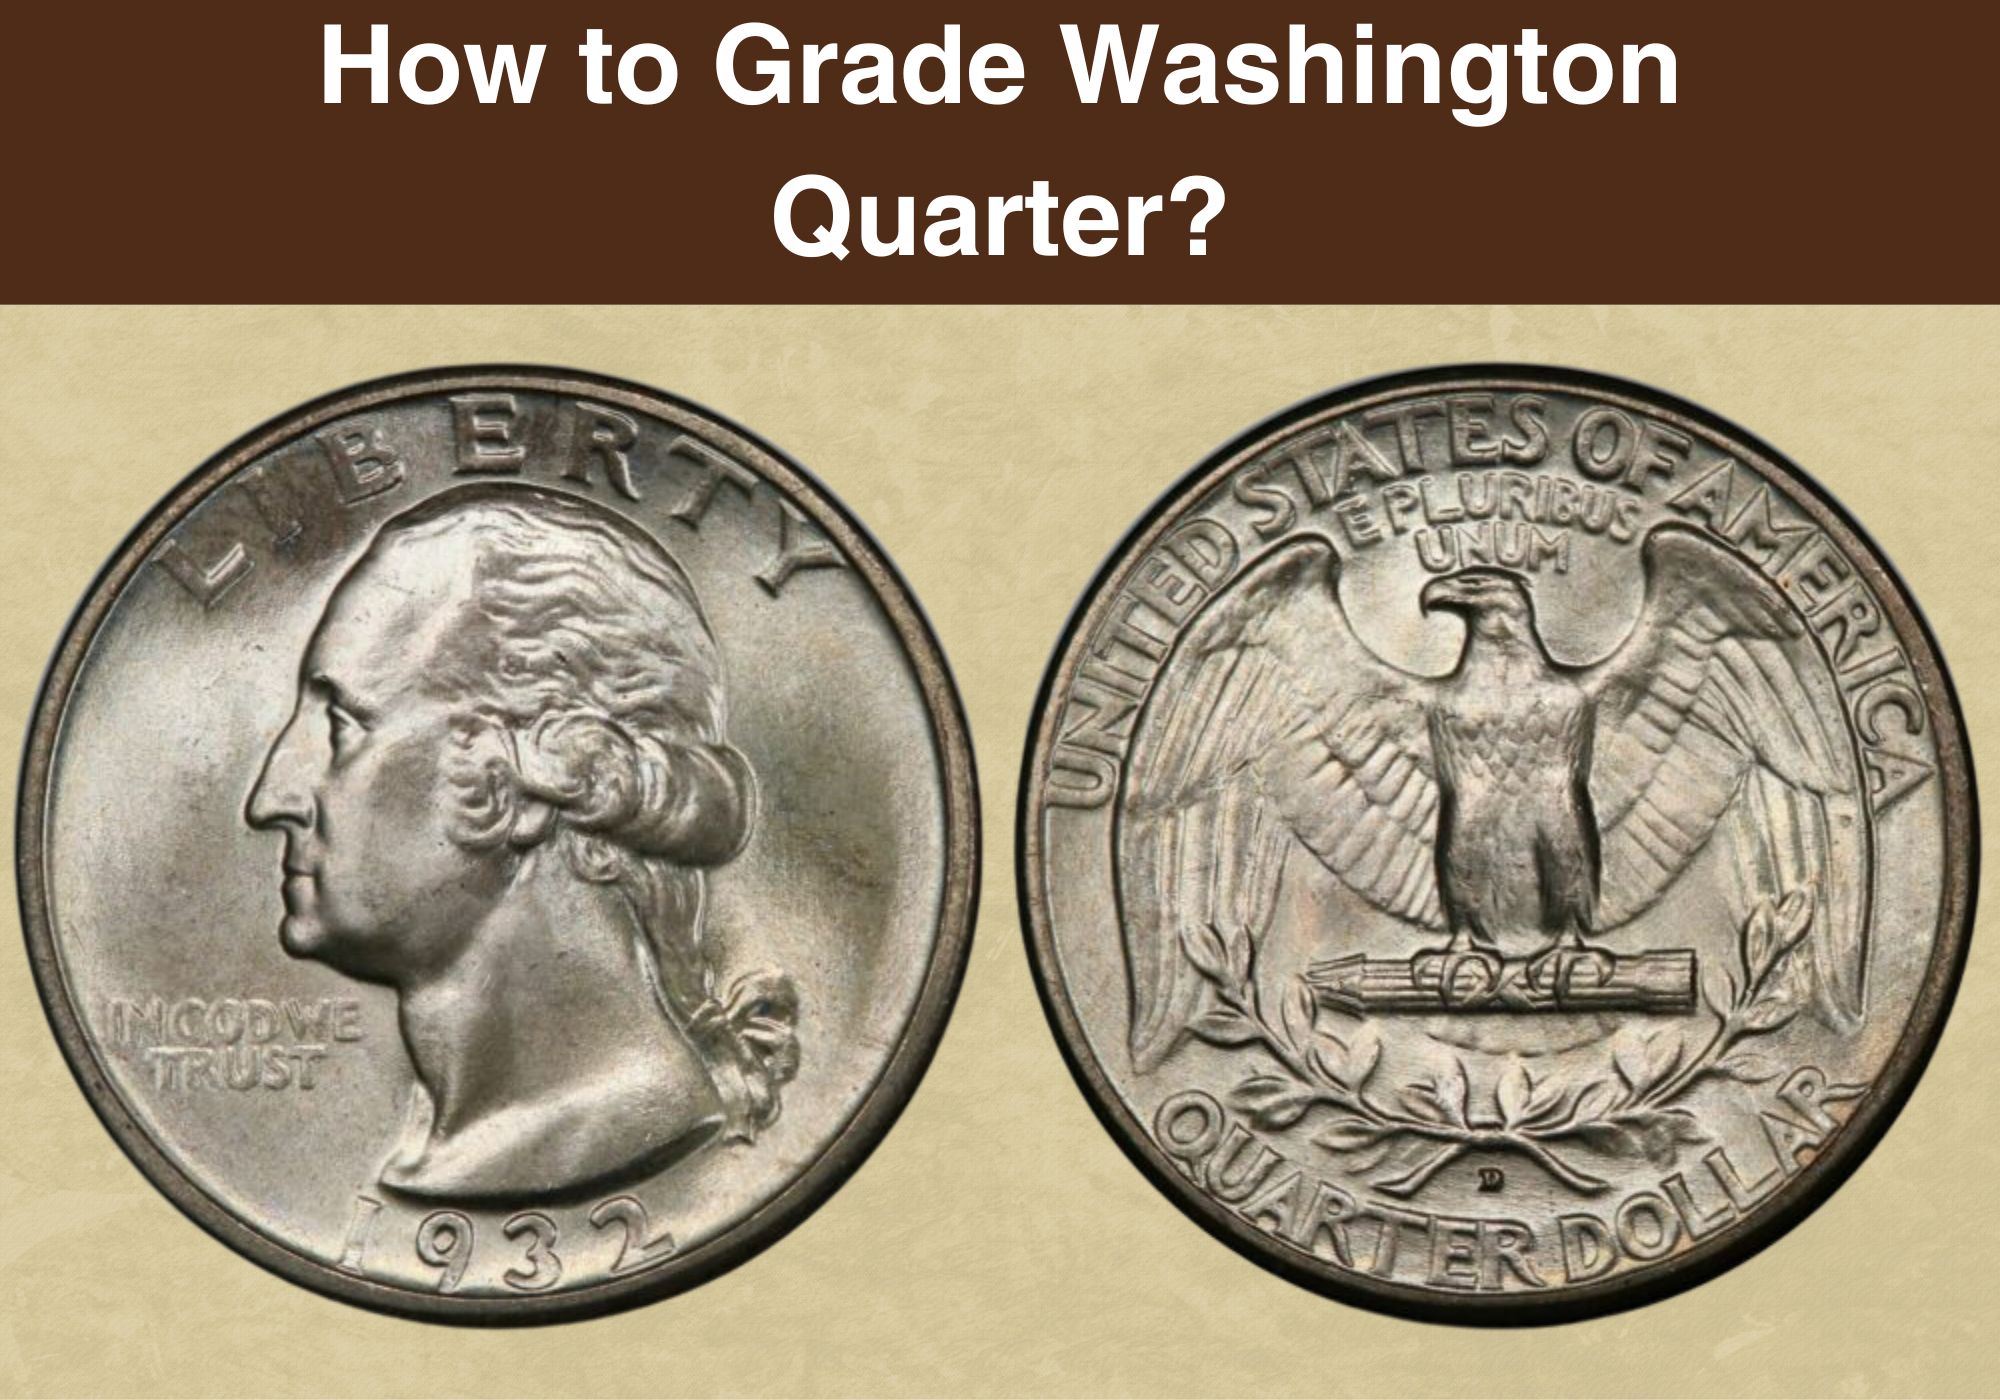 How to Grade Washington Quarter